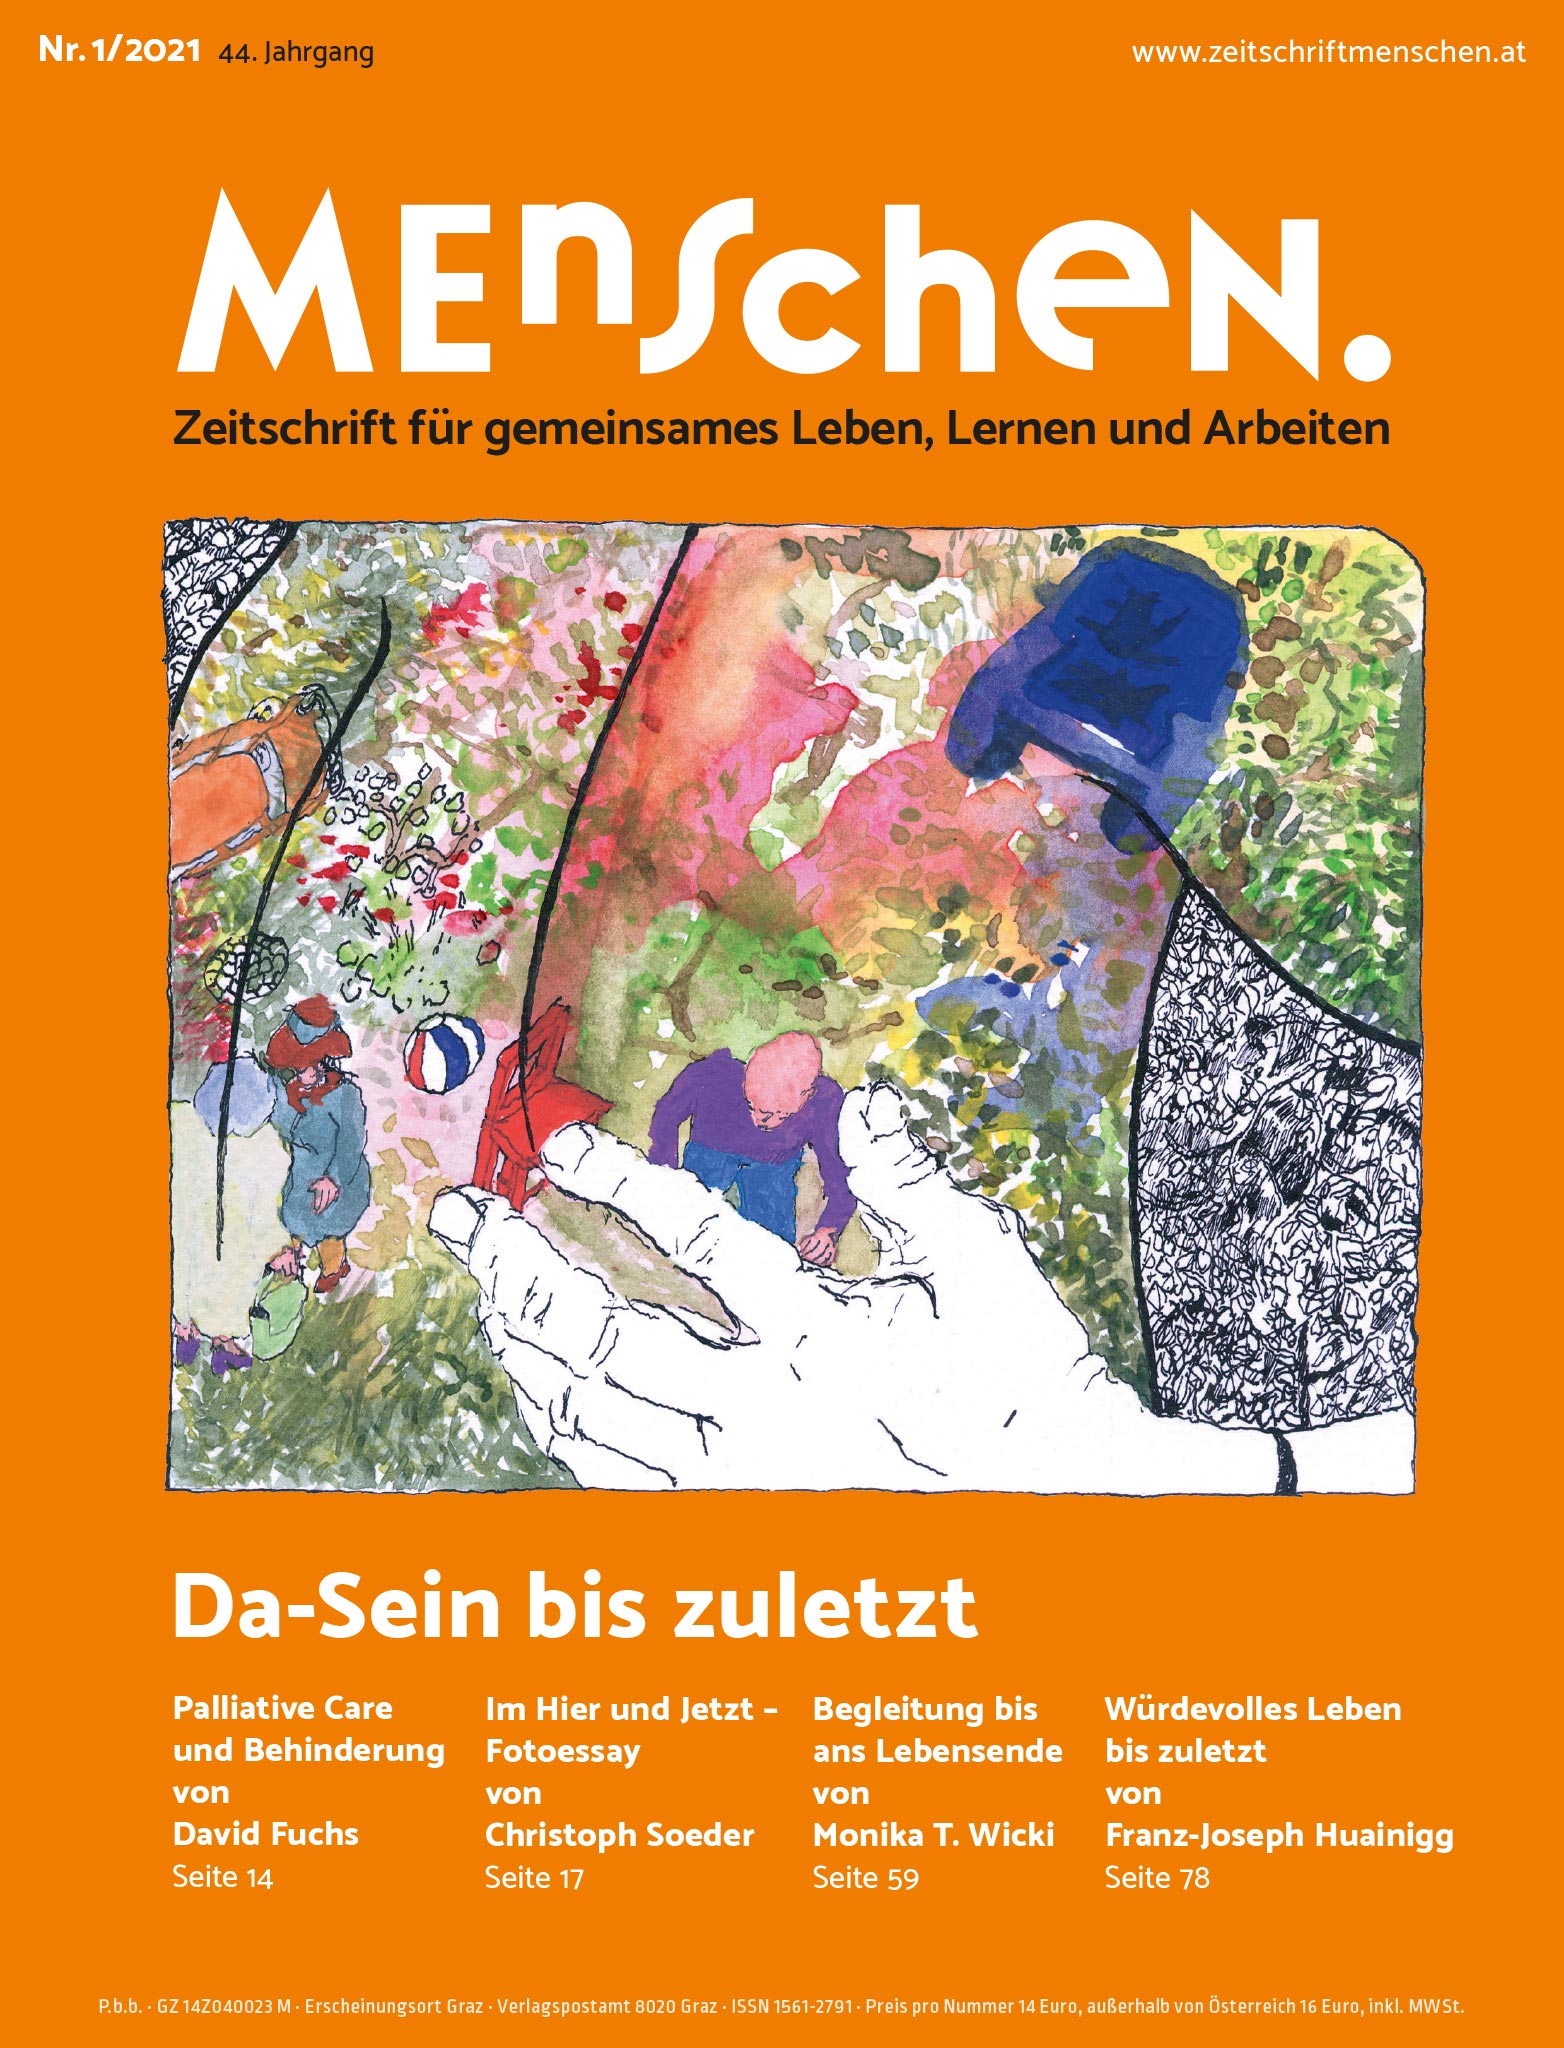 Titelbild der Zeitschrift BEHINDERTE MENSCHEN, Ausgabe 1/2021 "Da-Sein bis zuletzt"